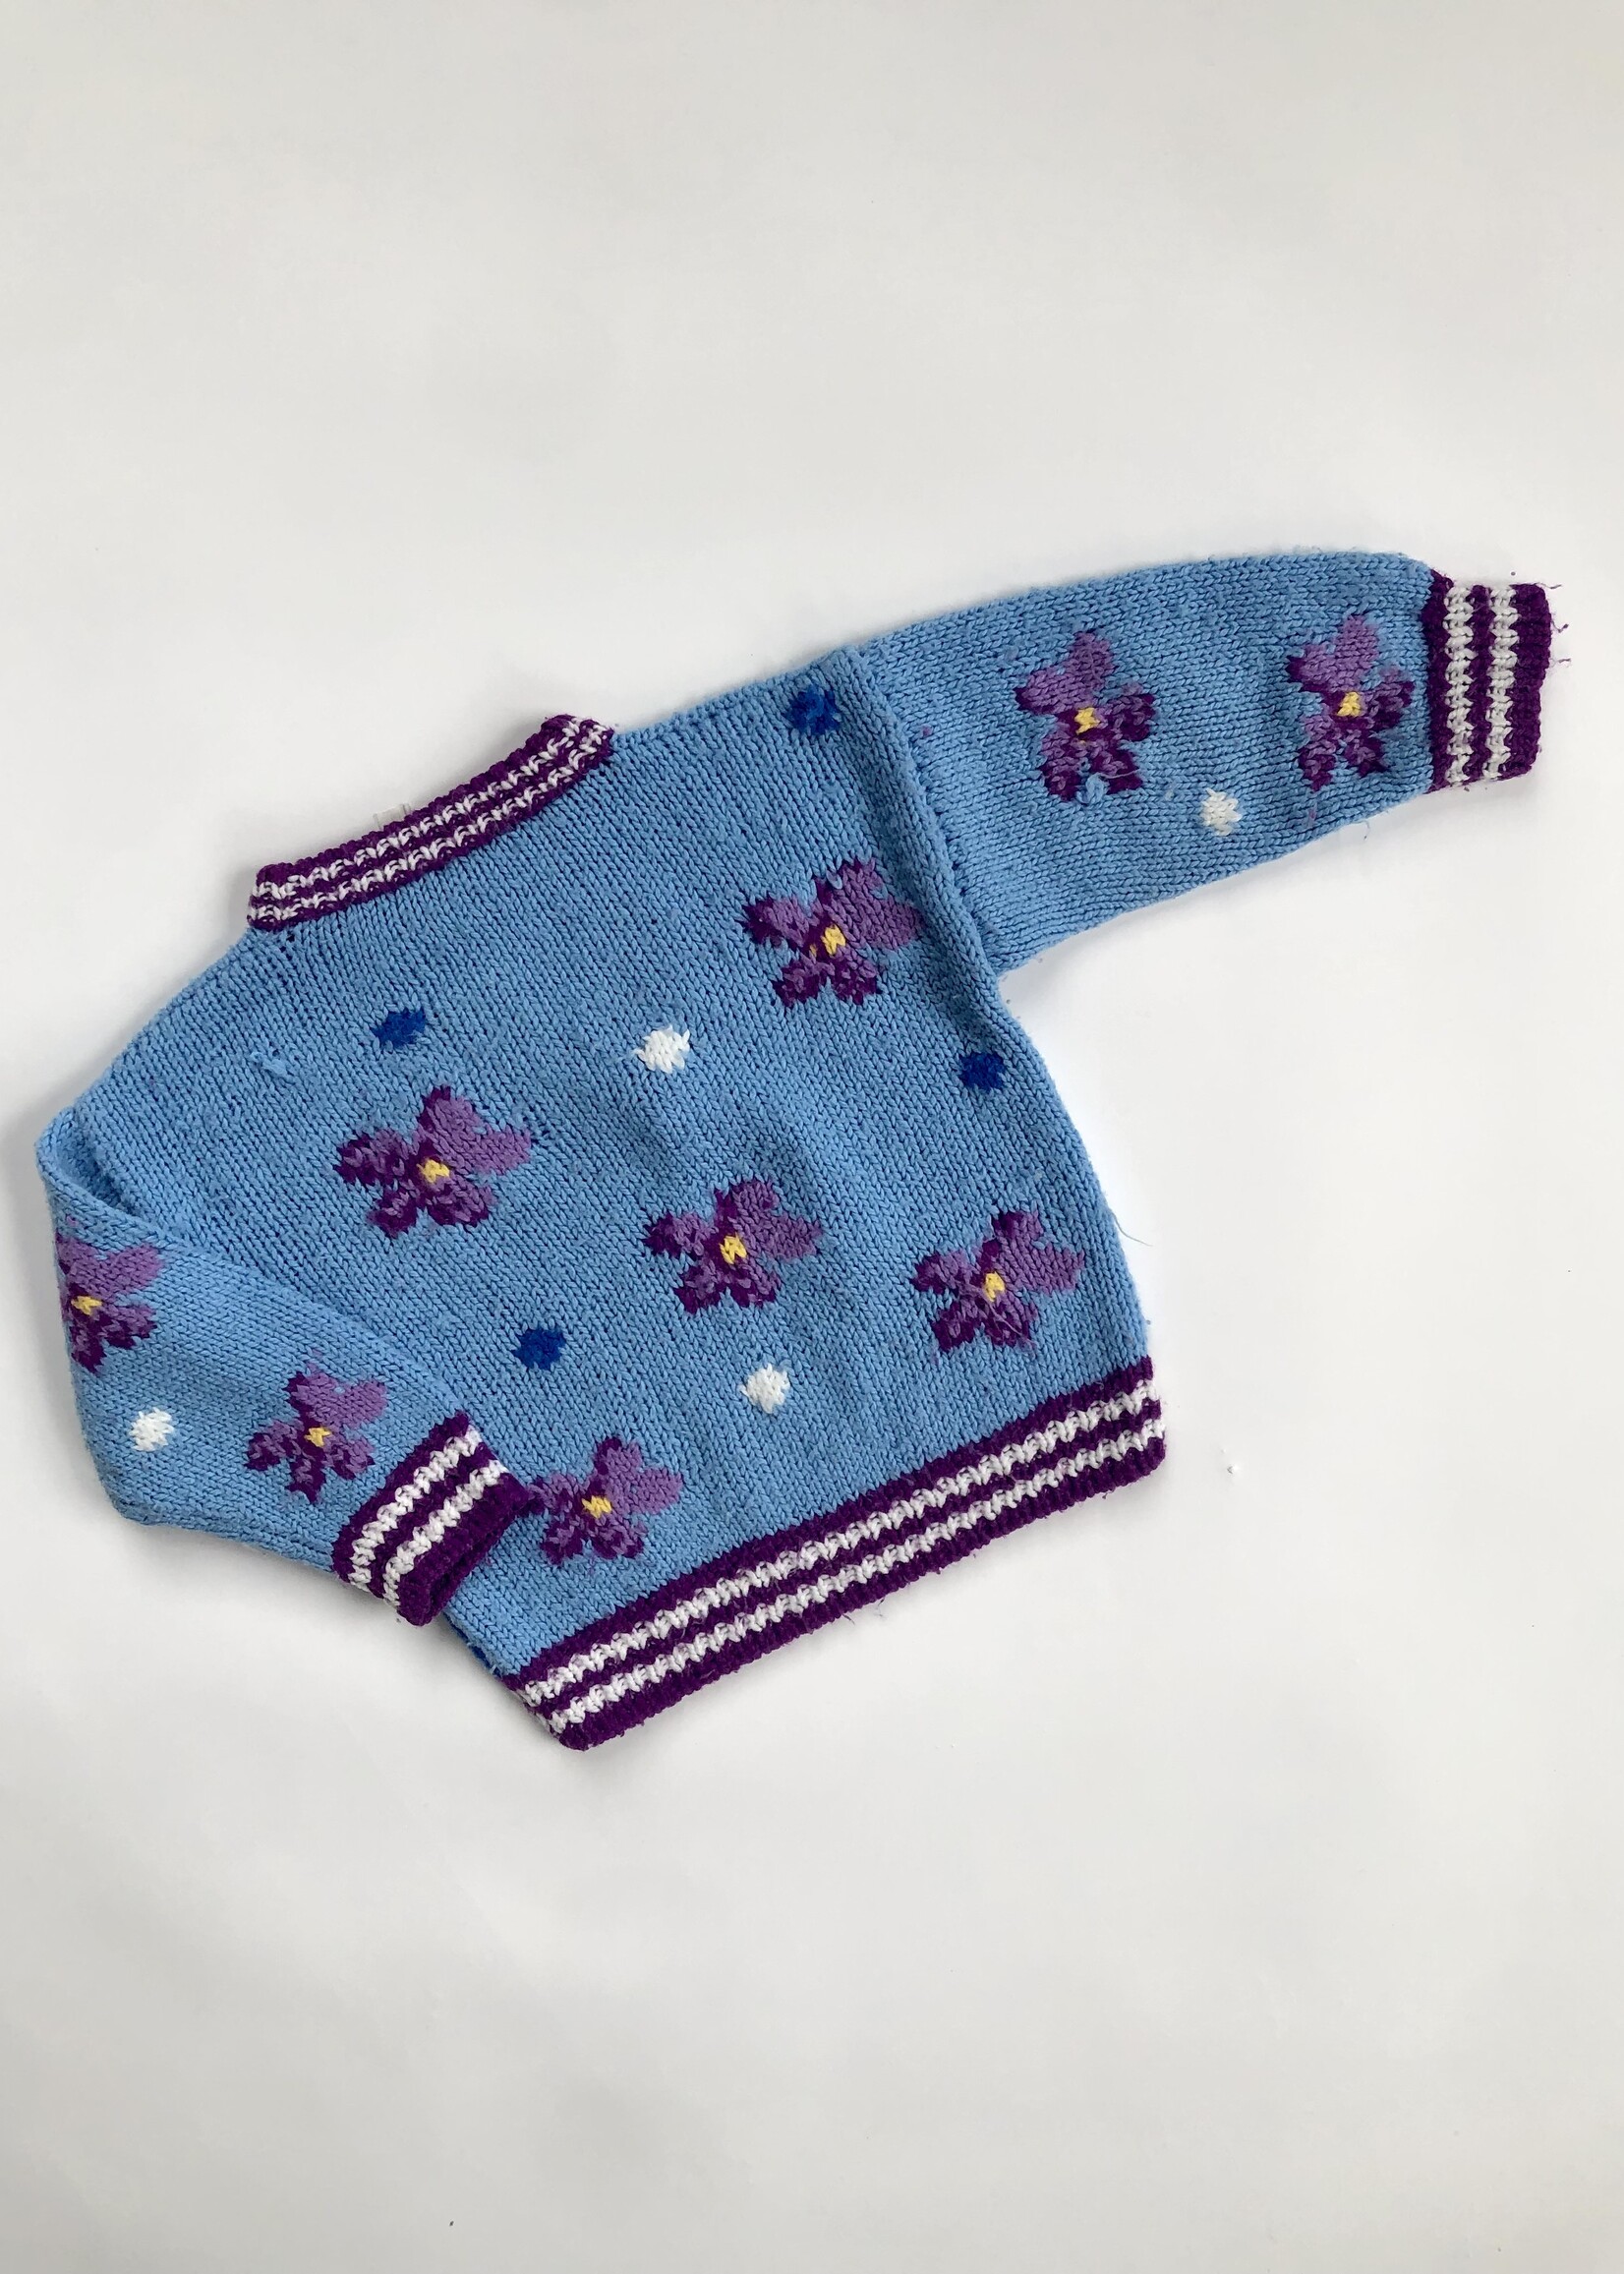 Vintage 'Haasje over' knitted sweater 4y